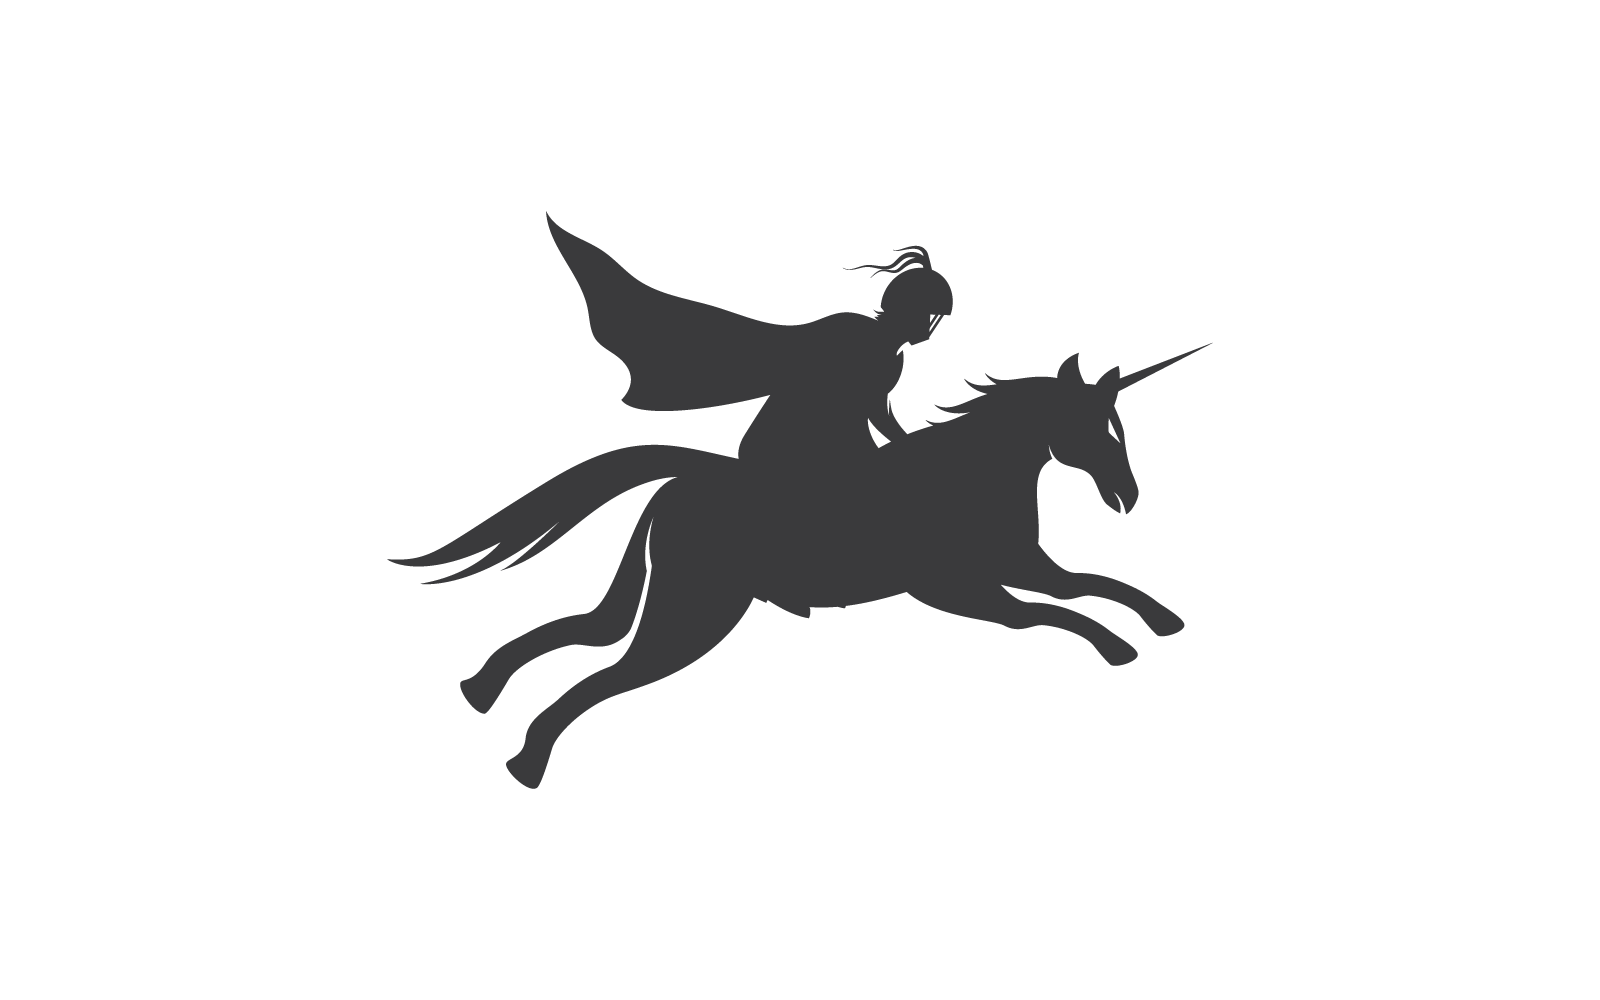 Horse knight hero logo icon vector design Logo Template